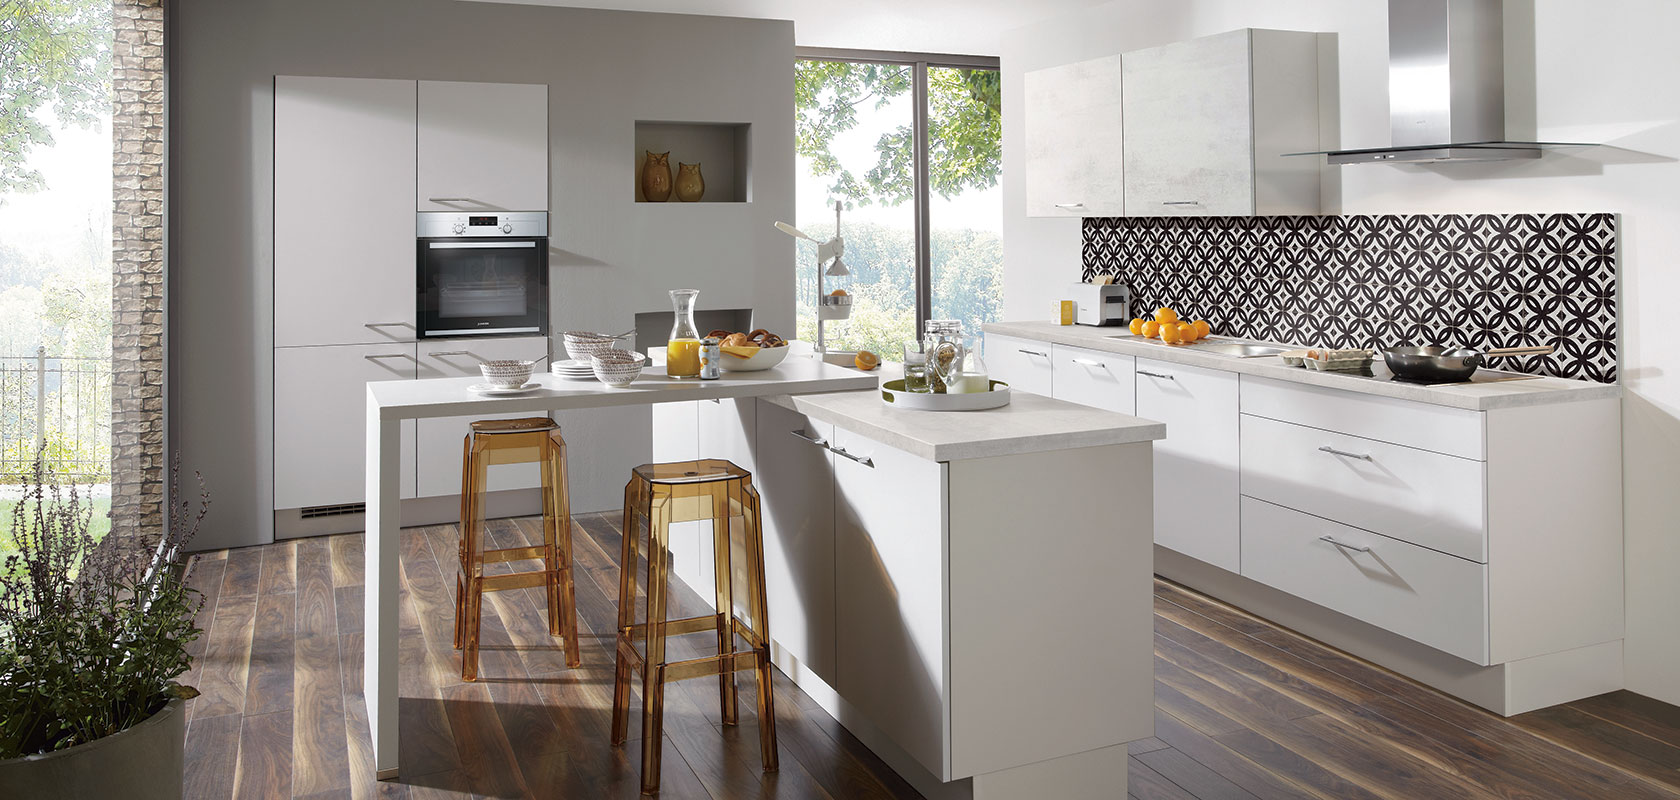 Moderne keuken met witte kasten, roestvrijstalen apparaten, patroontegels achterwand en een ontbijtbar met krukken bij een groot raam.